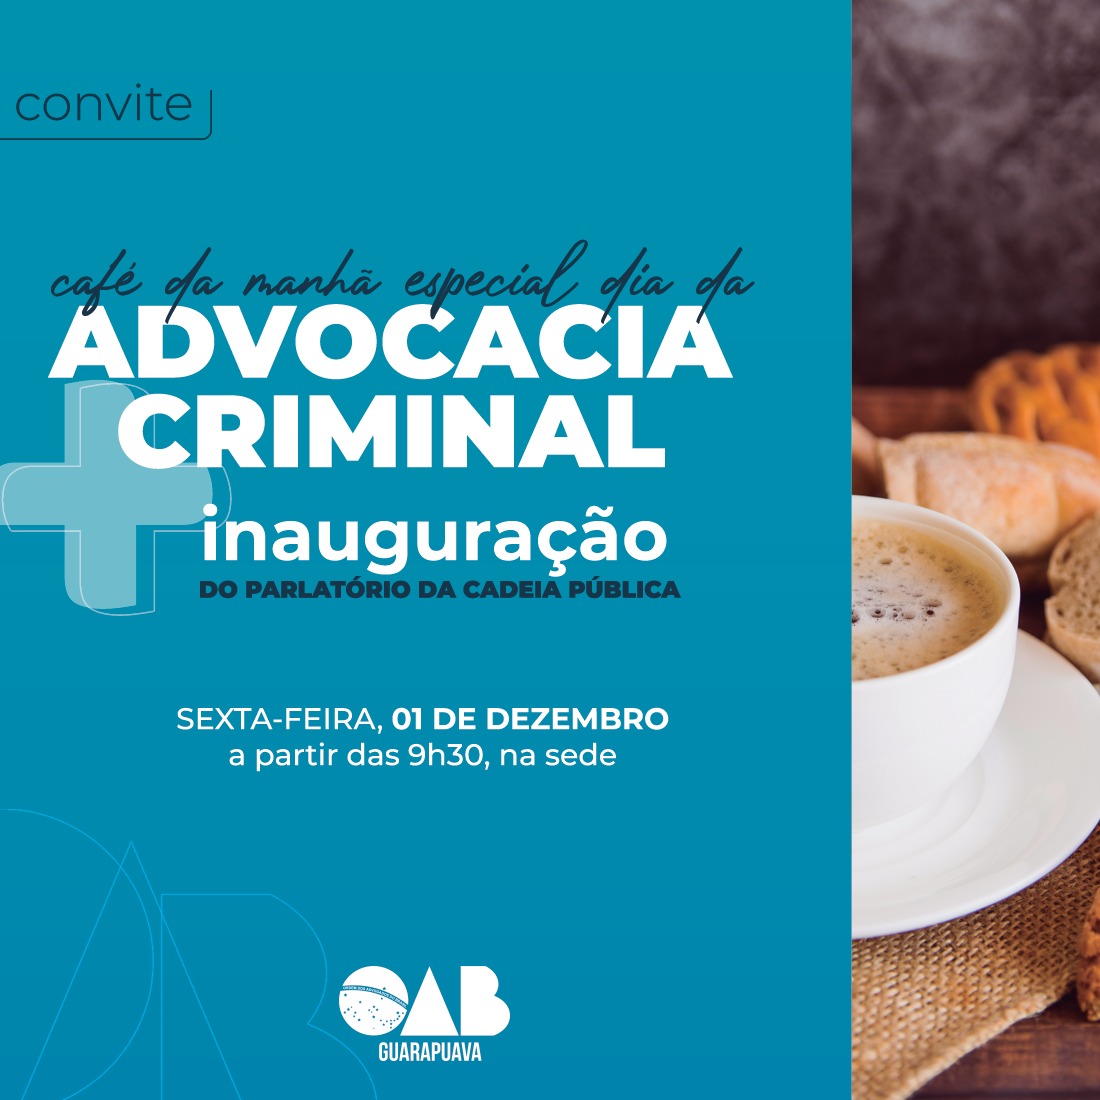 Café pelo Dia da Advocacia Criminal + inauguração parlatório da Cadeia Pública